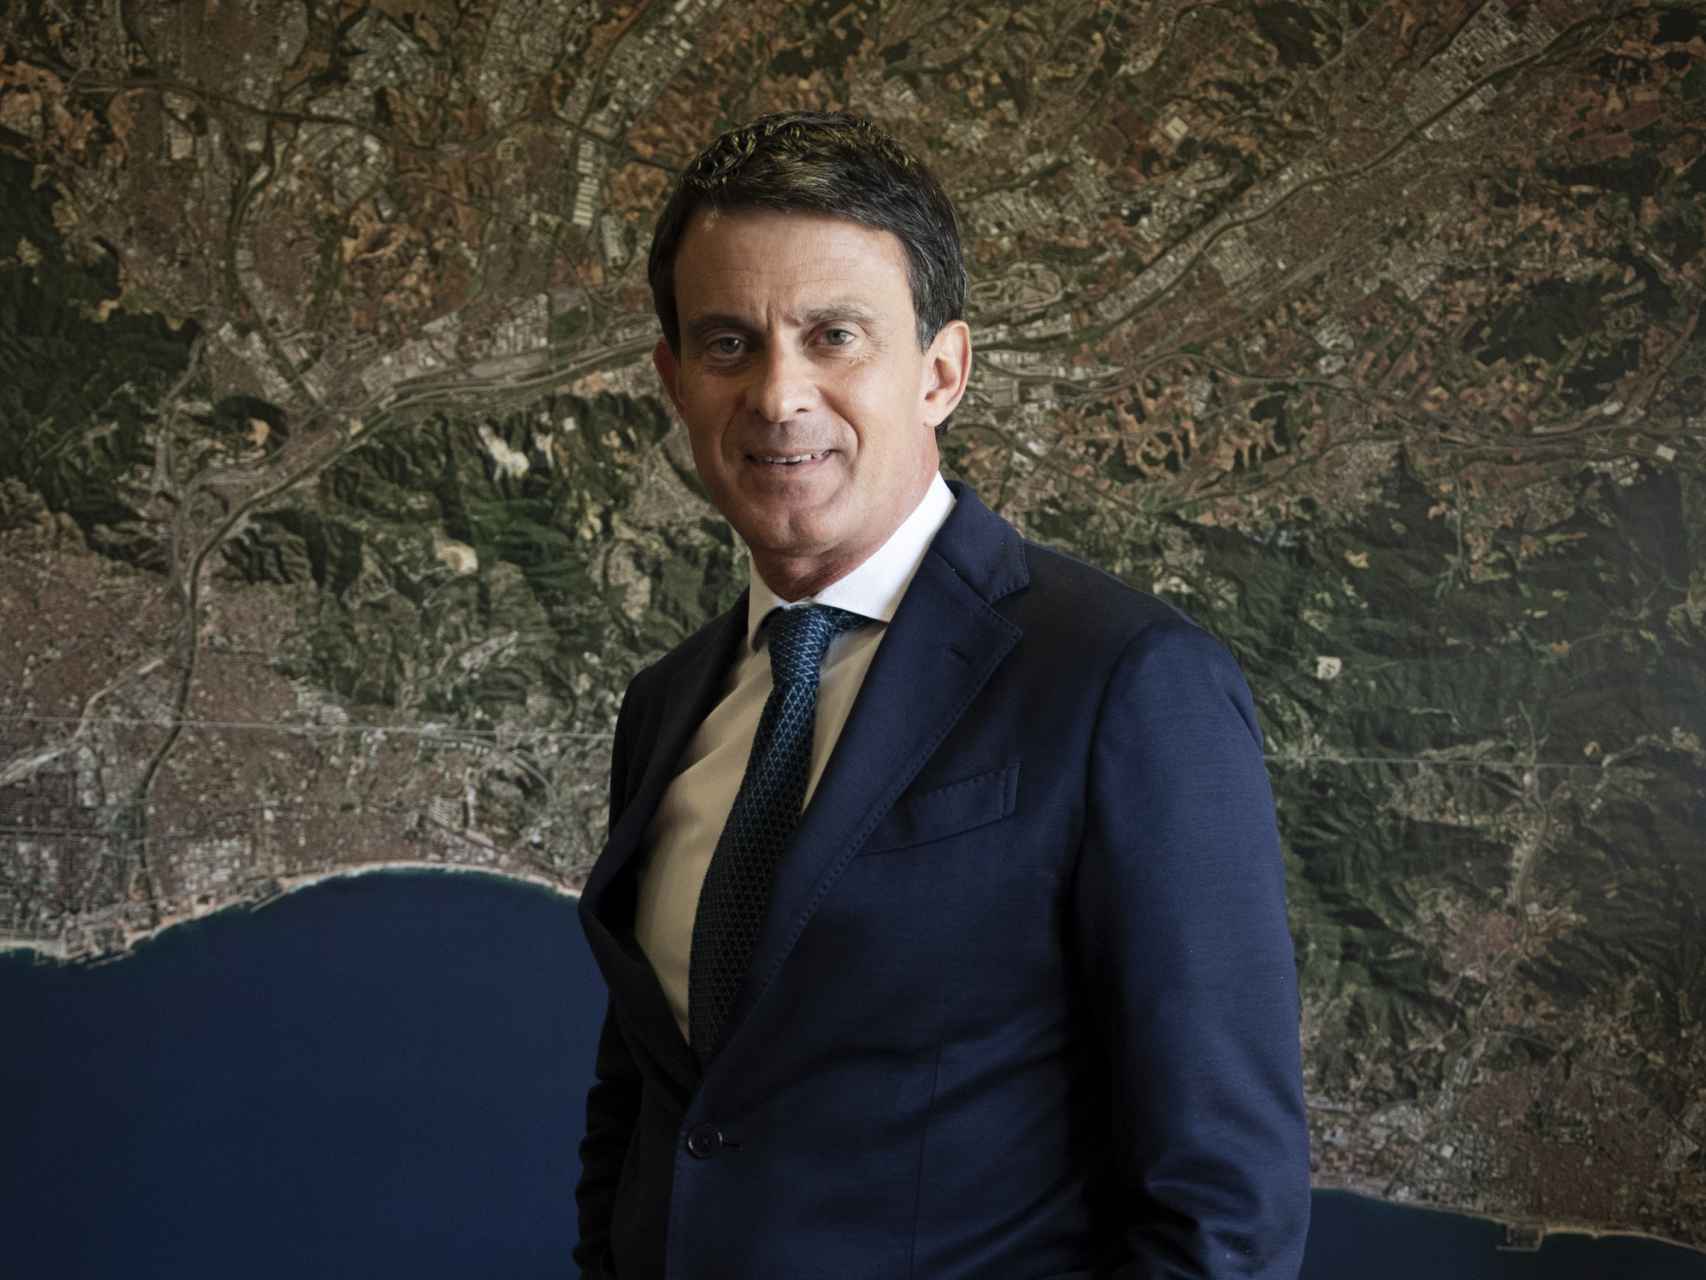 Manuel Valls, frente a una fotografía aérea de Barcelona en su oficina de campaña.